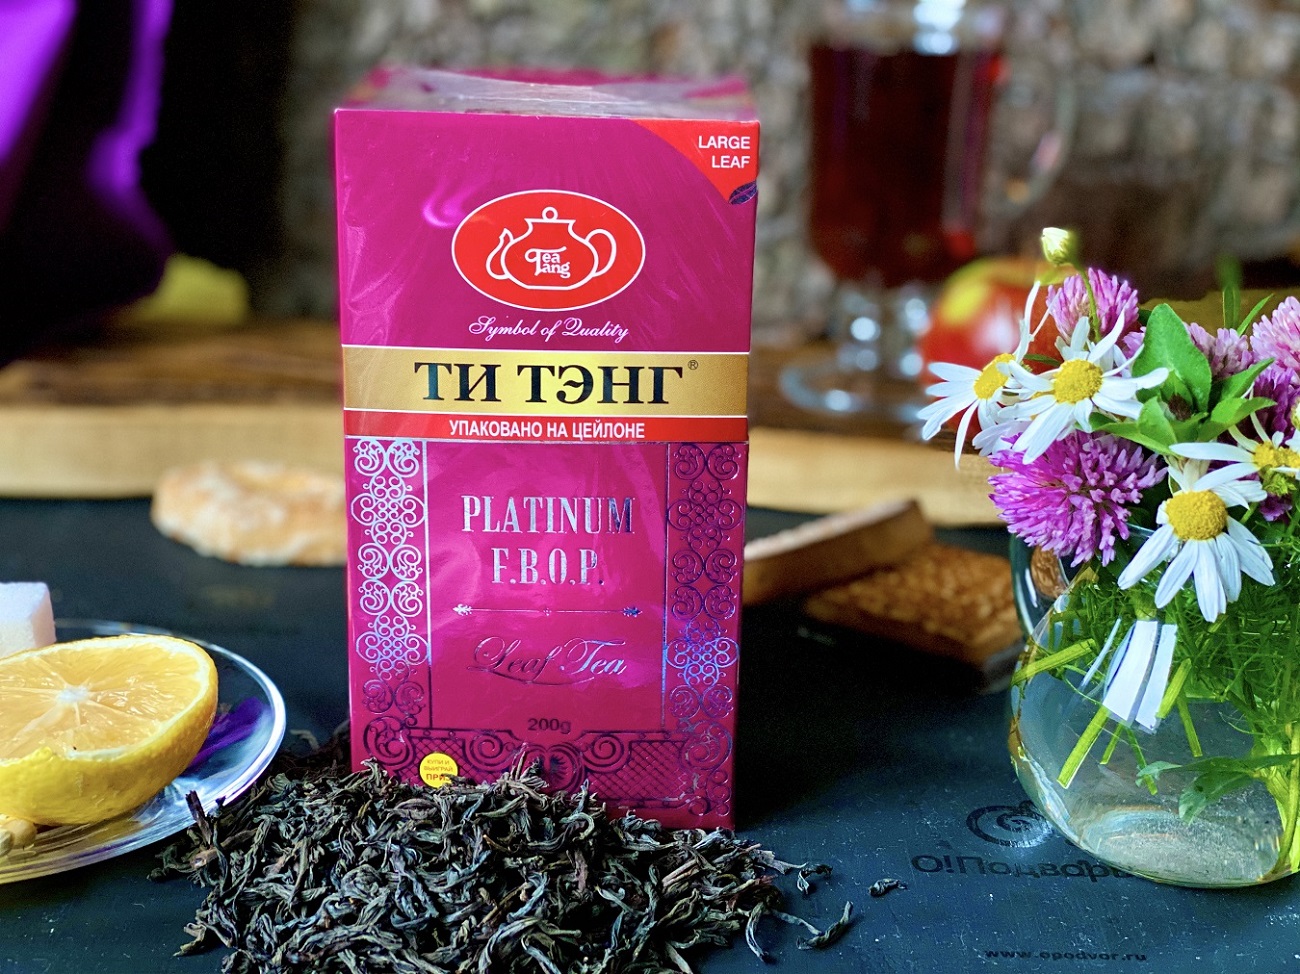 Черный чай ТИ ТЭНГ PLATINUM F.B.O.P. 200 грамм